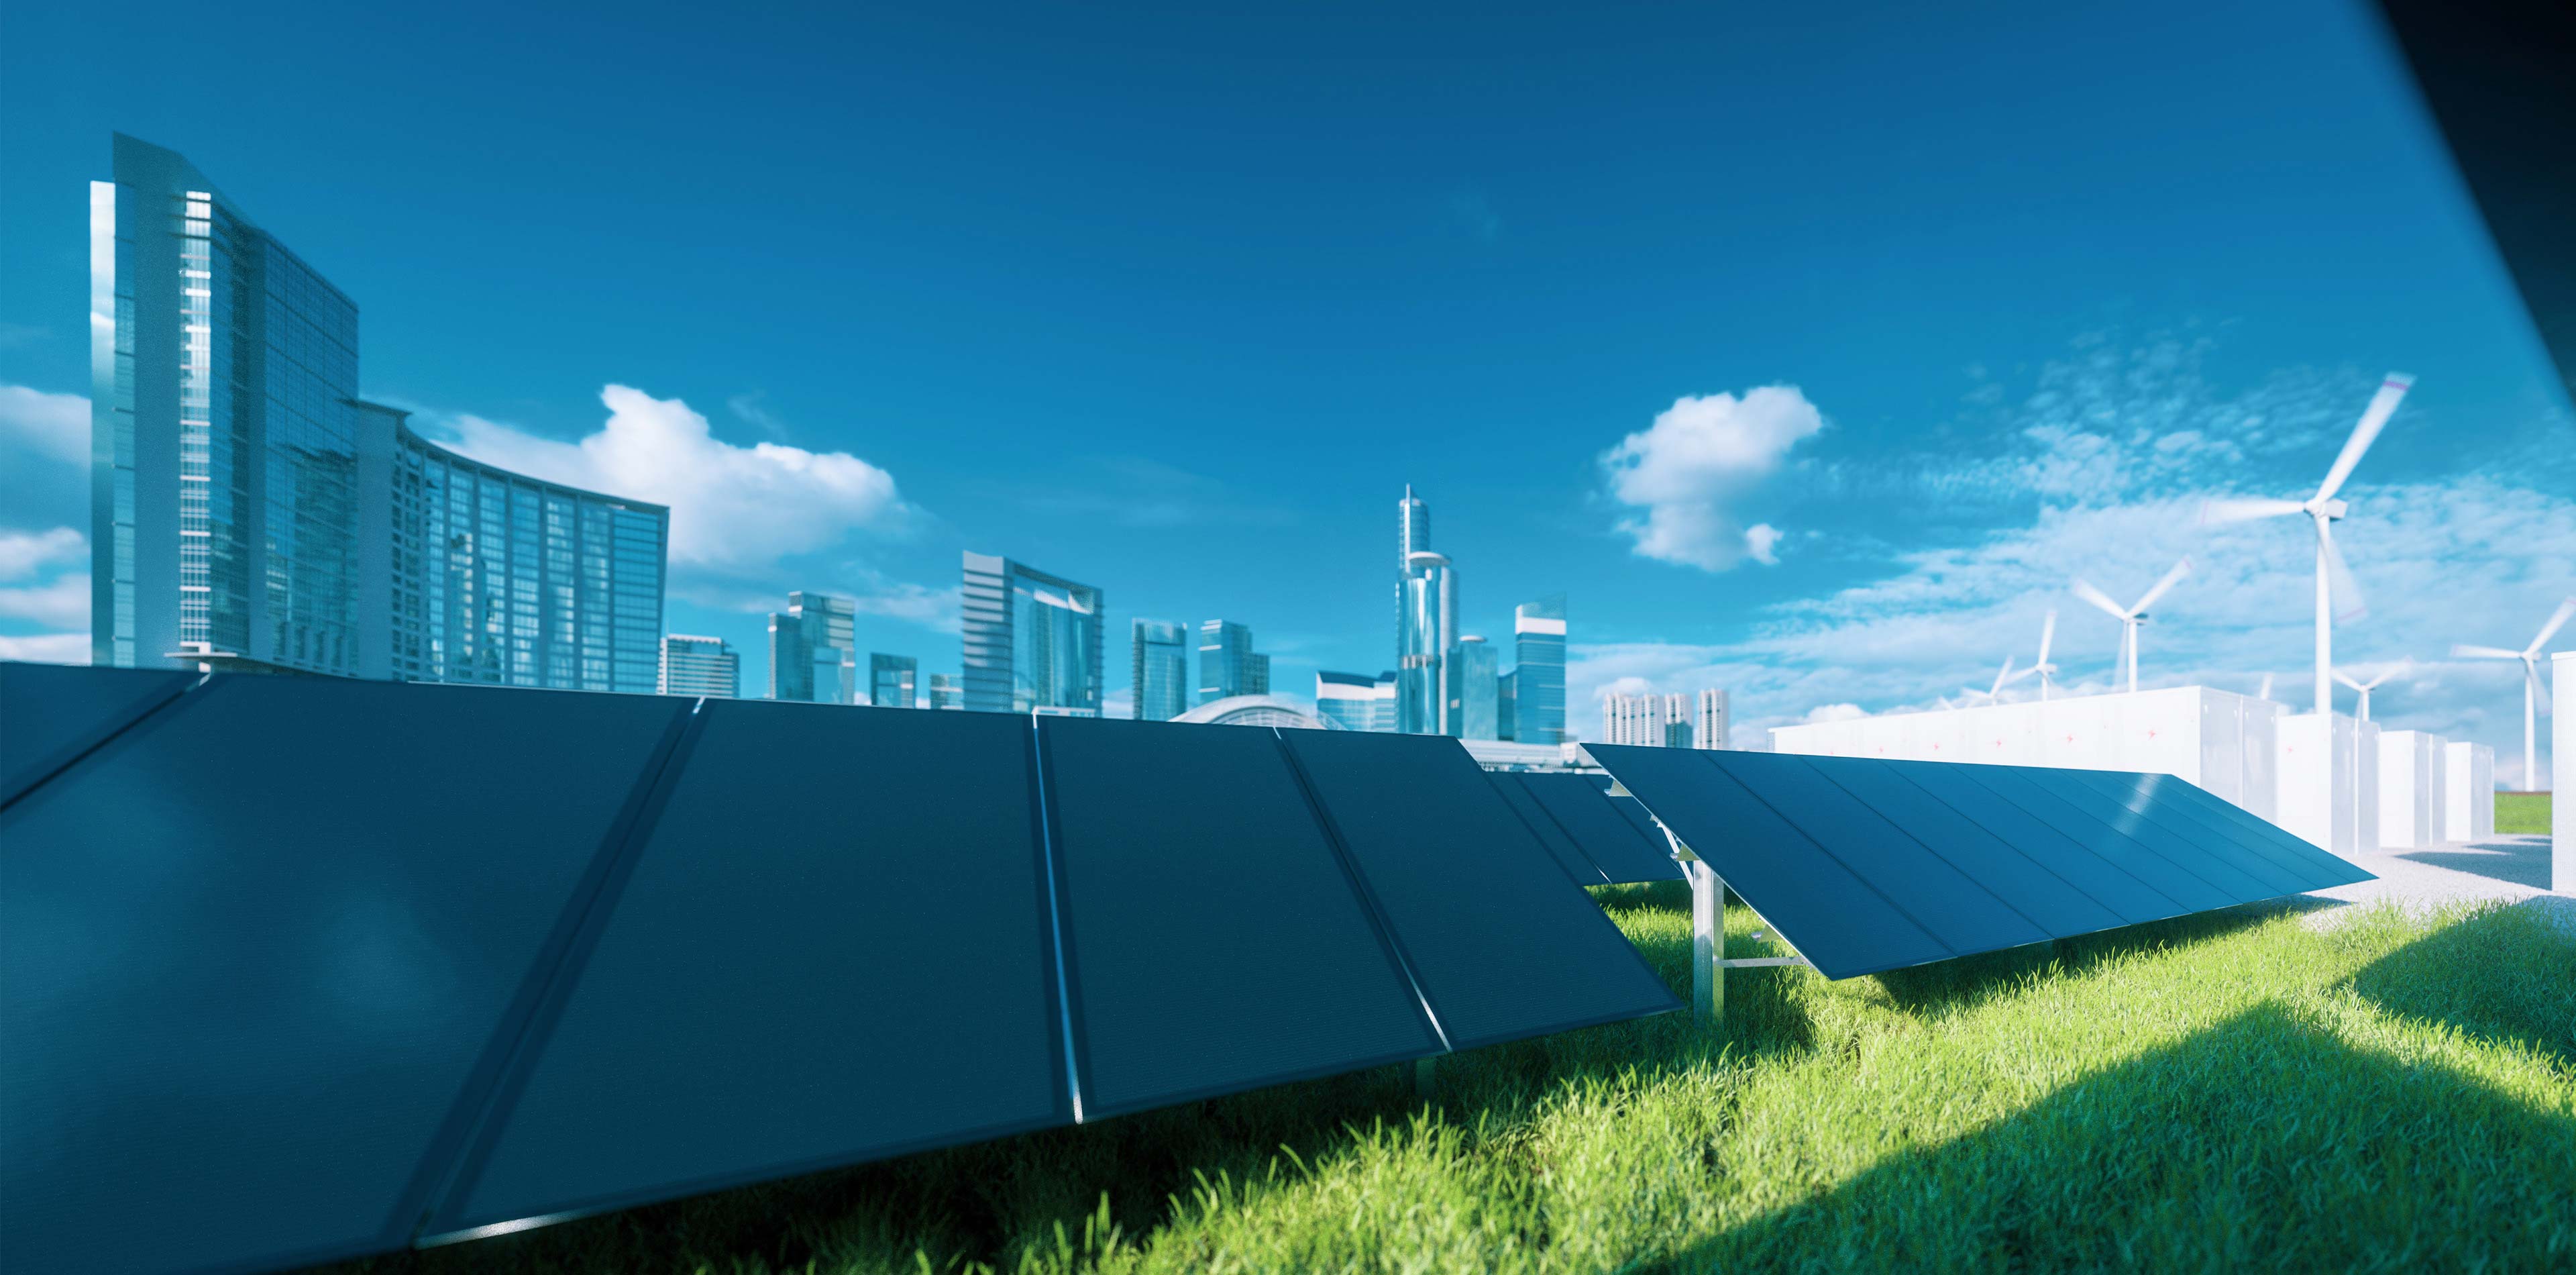 Energie oplossingen - zonnepanelen